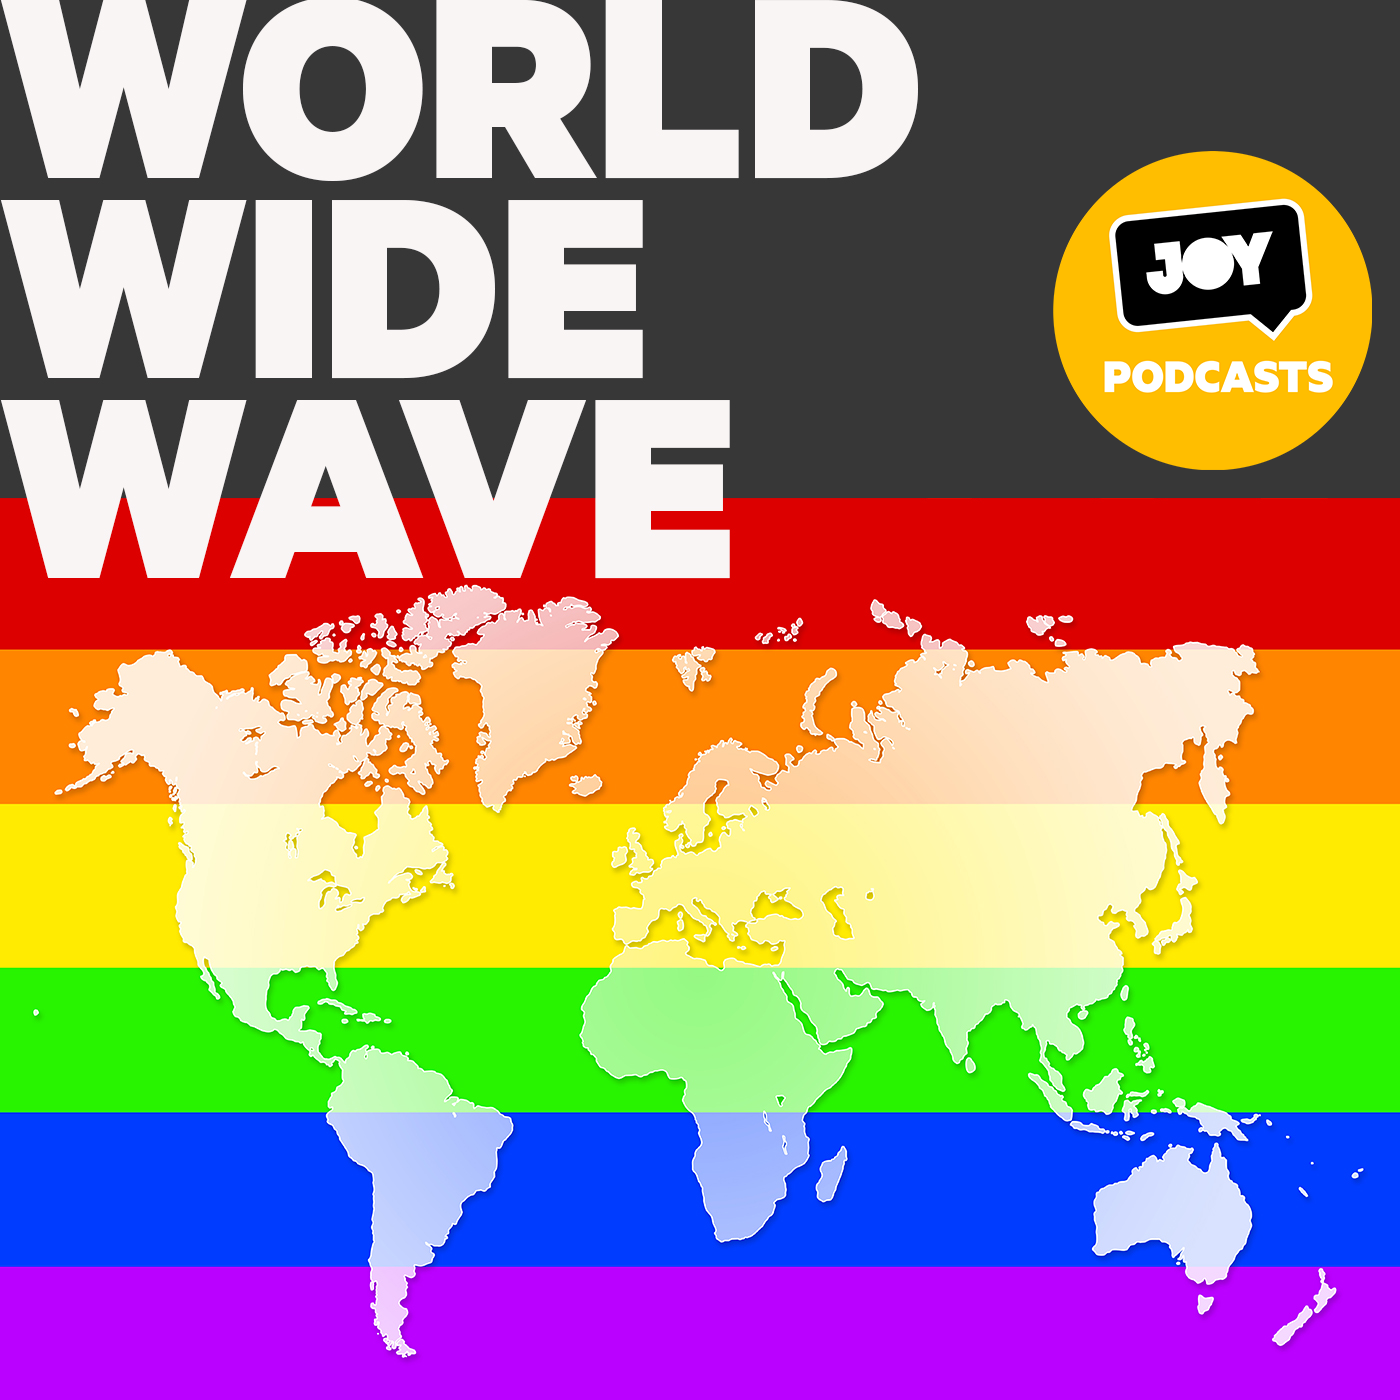 Ghana: Global pressure to halt harsh anti-gay laws